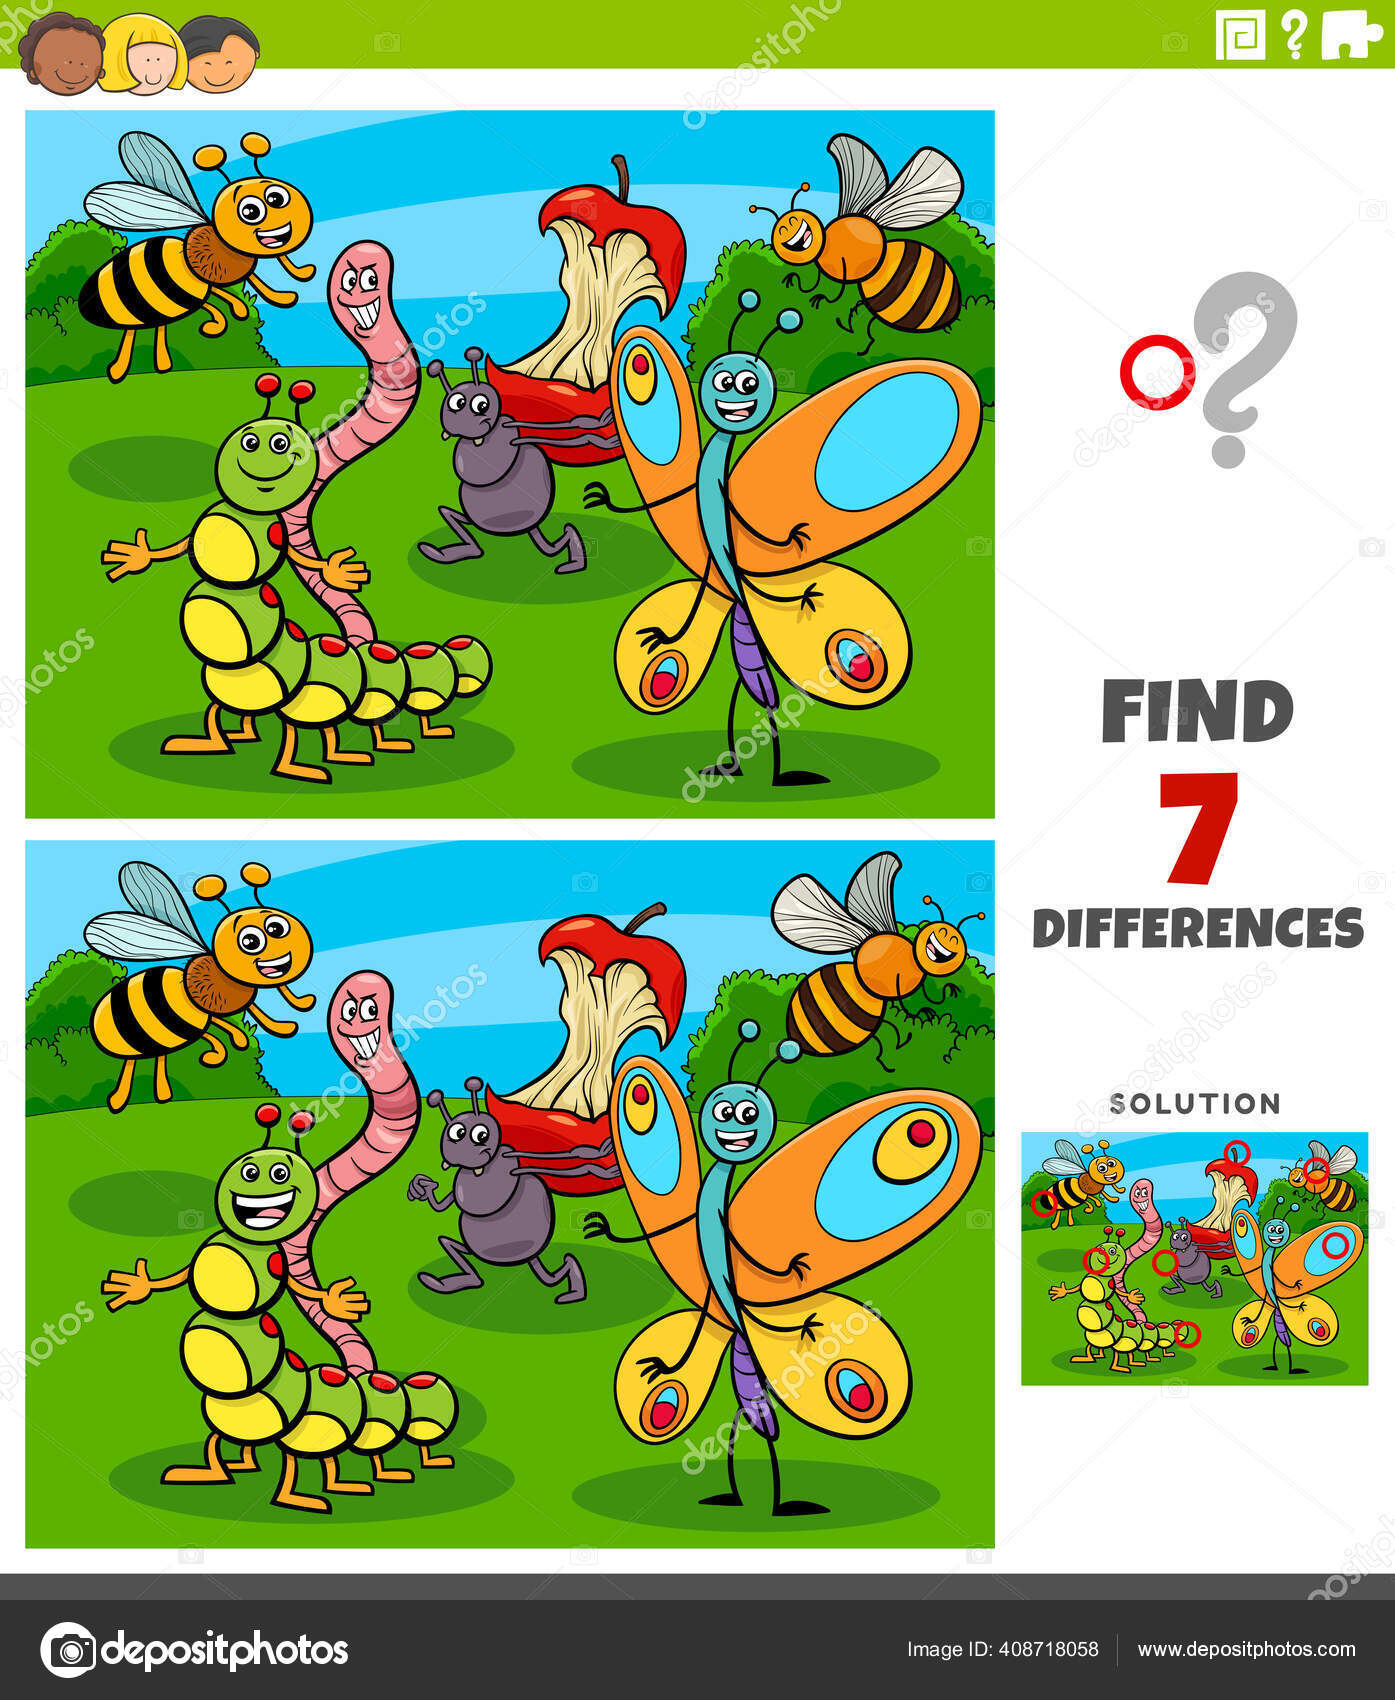 Encontrar As Diferenças Entre As Imagens. Jogo Educativo Infantil